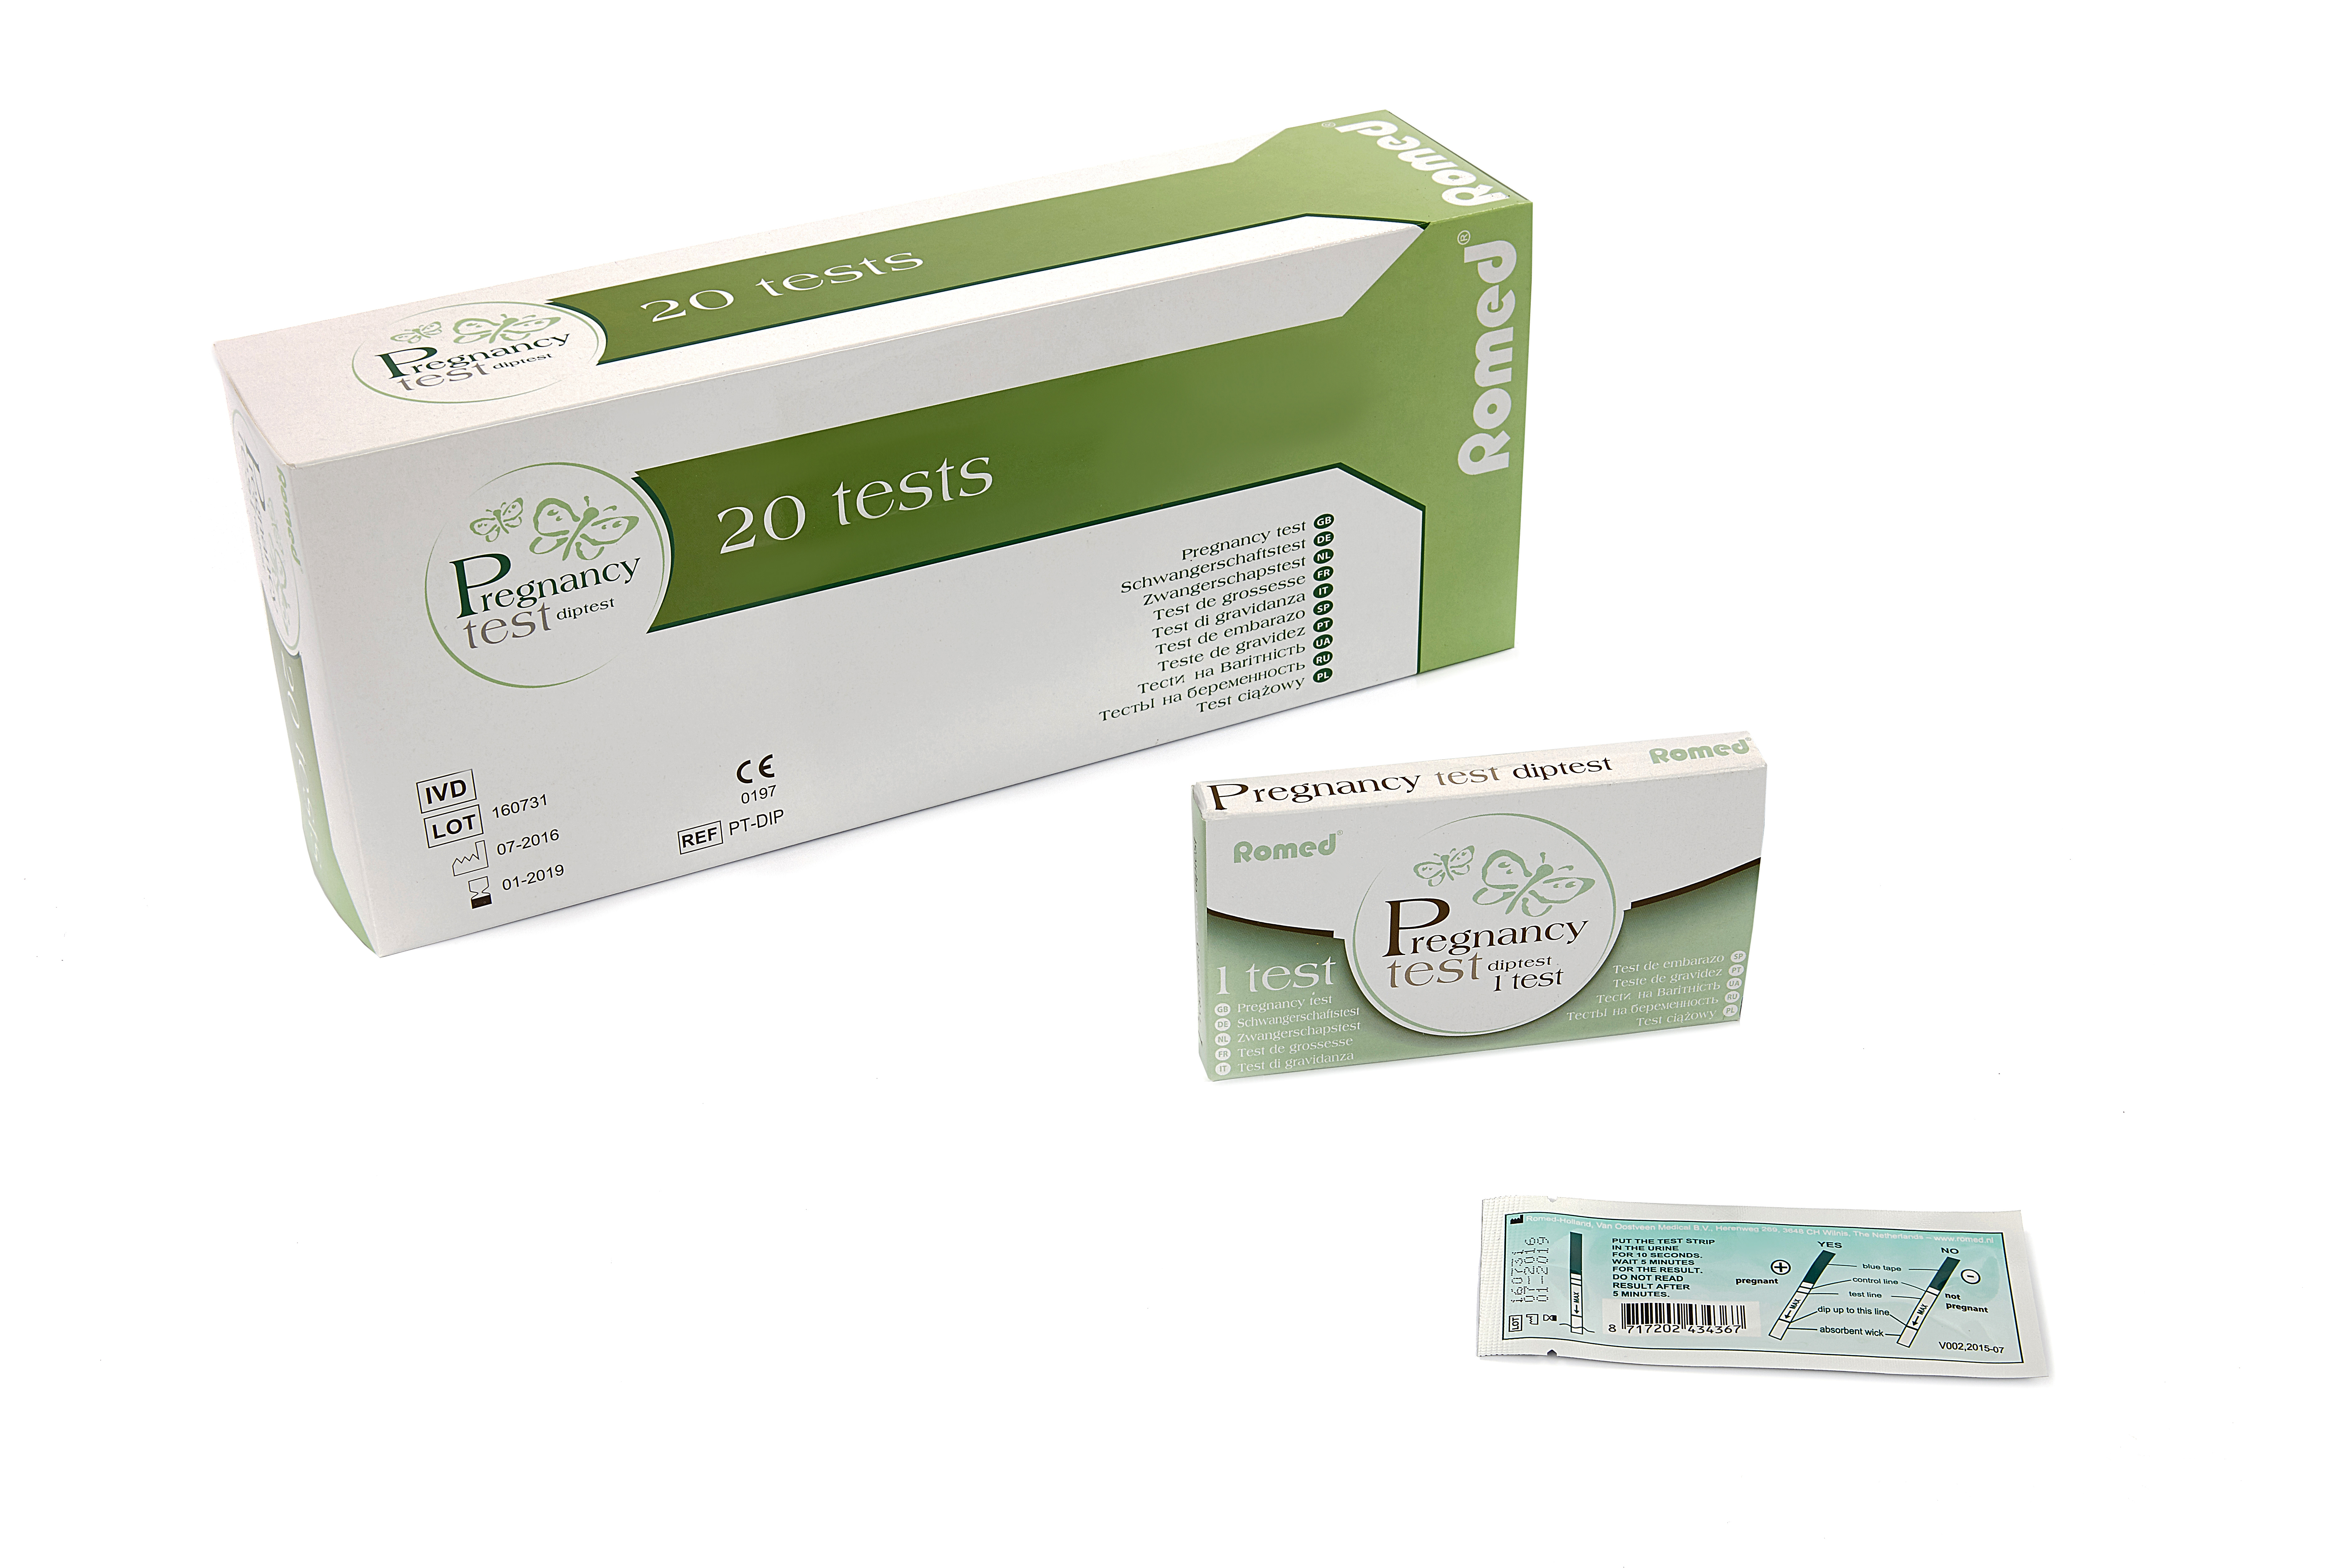 PT-DIP Romed Schwangerschaftsteste, DipTest, verpackt pro Stück, pro 20 Stück in einer Schachtel, 25 x 20 Stück = 500 Stück im Karton.